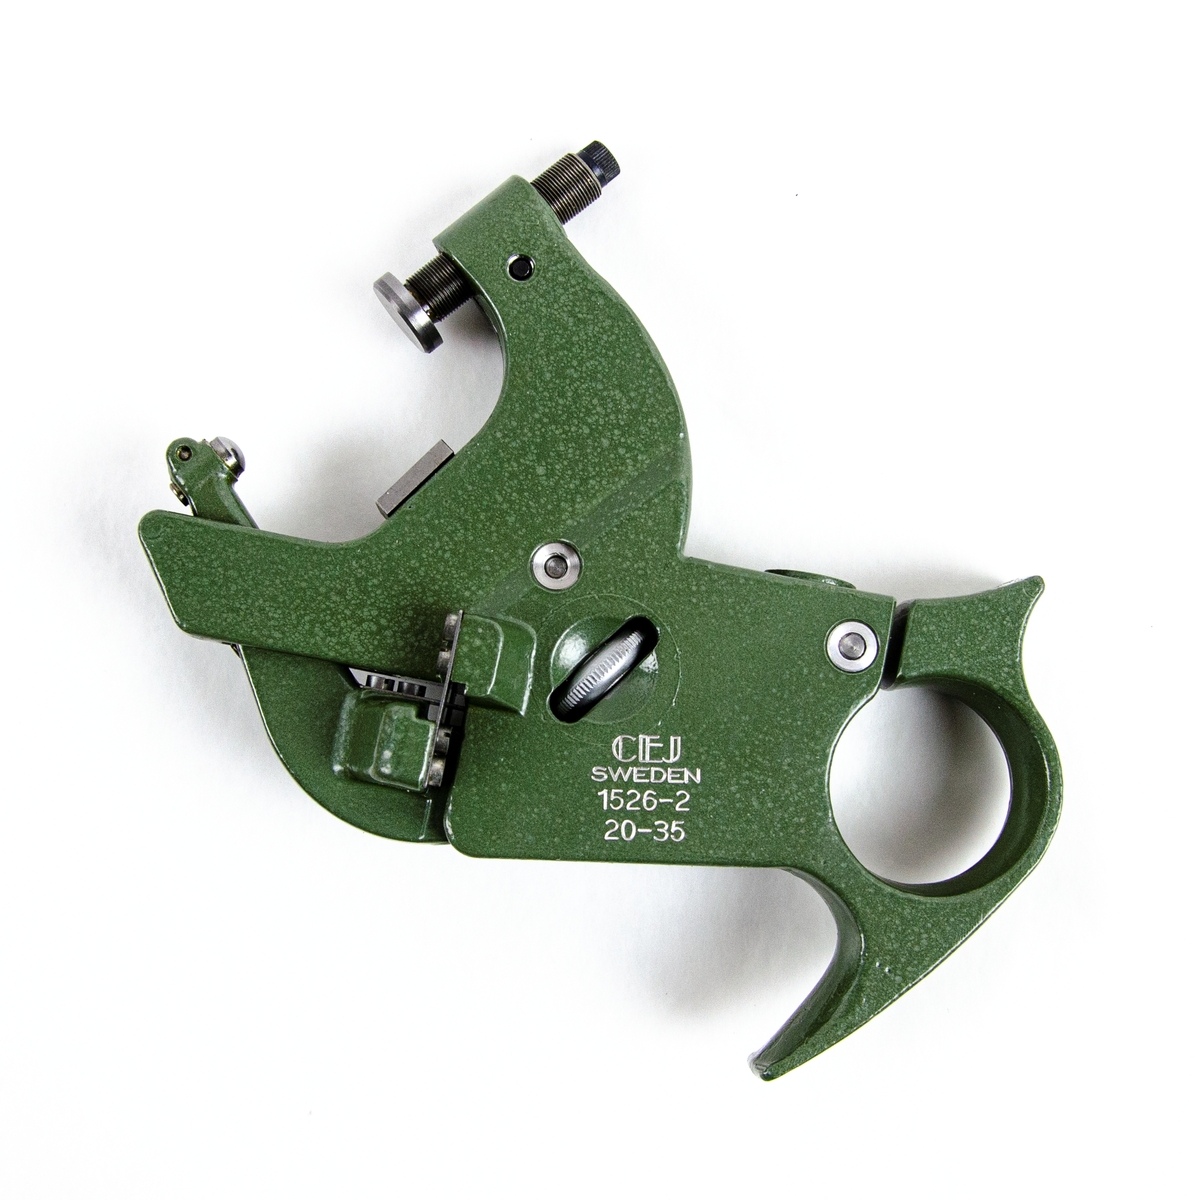 Mätbygel 1526-2
Grön verktyg i metall i specialtillverkad trälåda. Det finns en insexnyckel för att justera verktyget. Lådan innehåller bruksanvisning, användningsexempel och ett godkännandecertifikat. Bygeln skall användas i samband med ett visarinstrument t.ex. en Mikrokator.